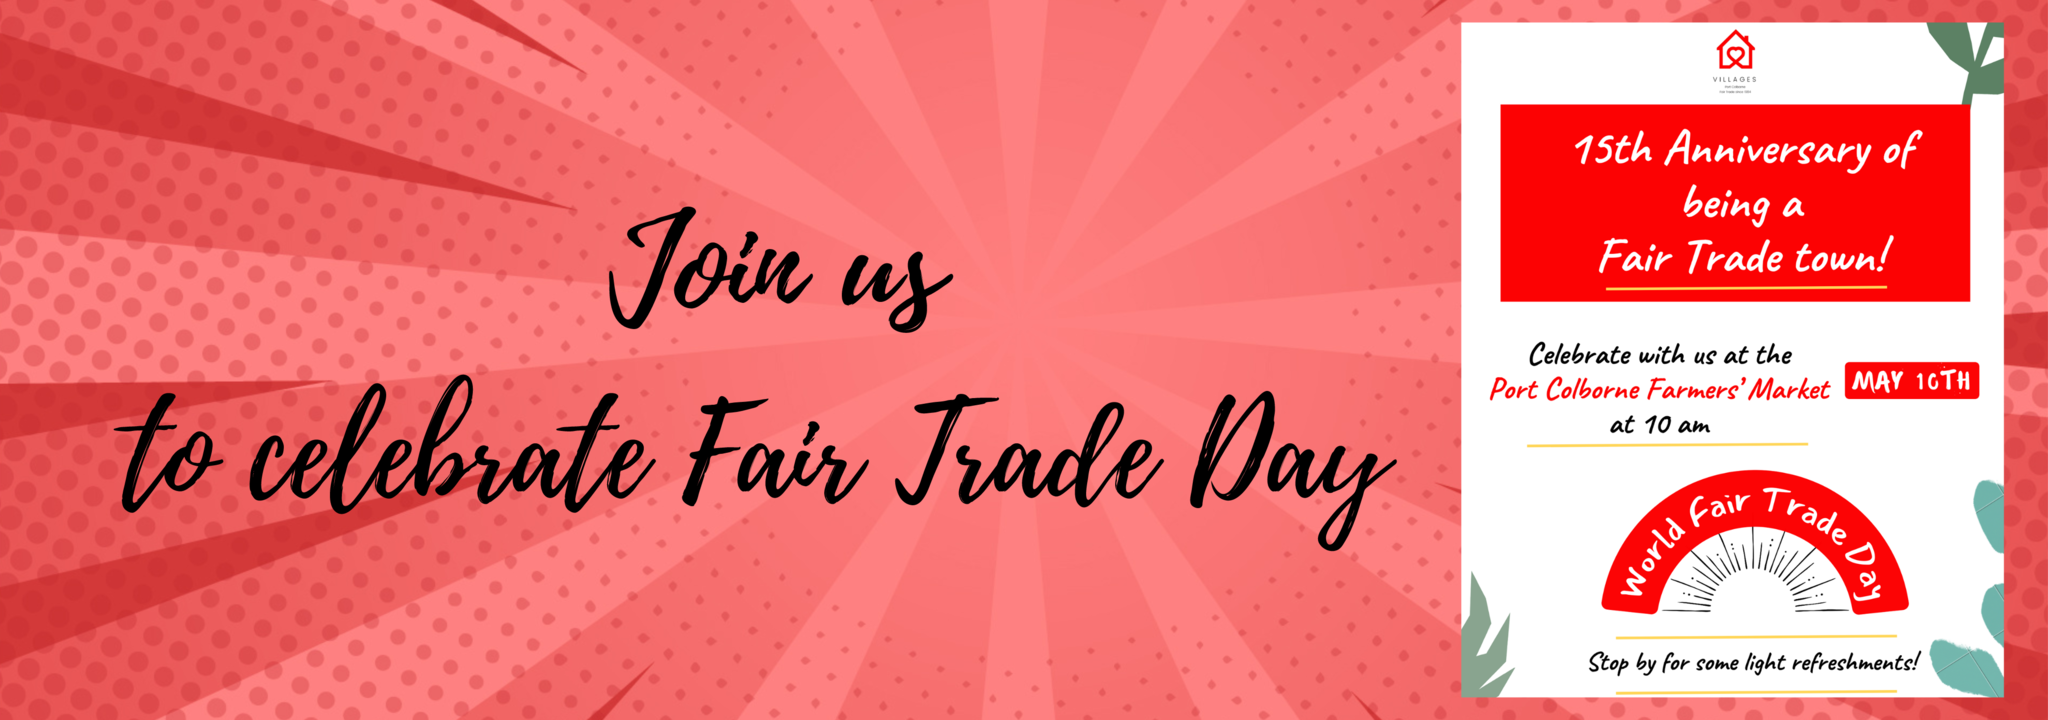 Fair Trade Day